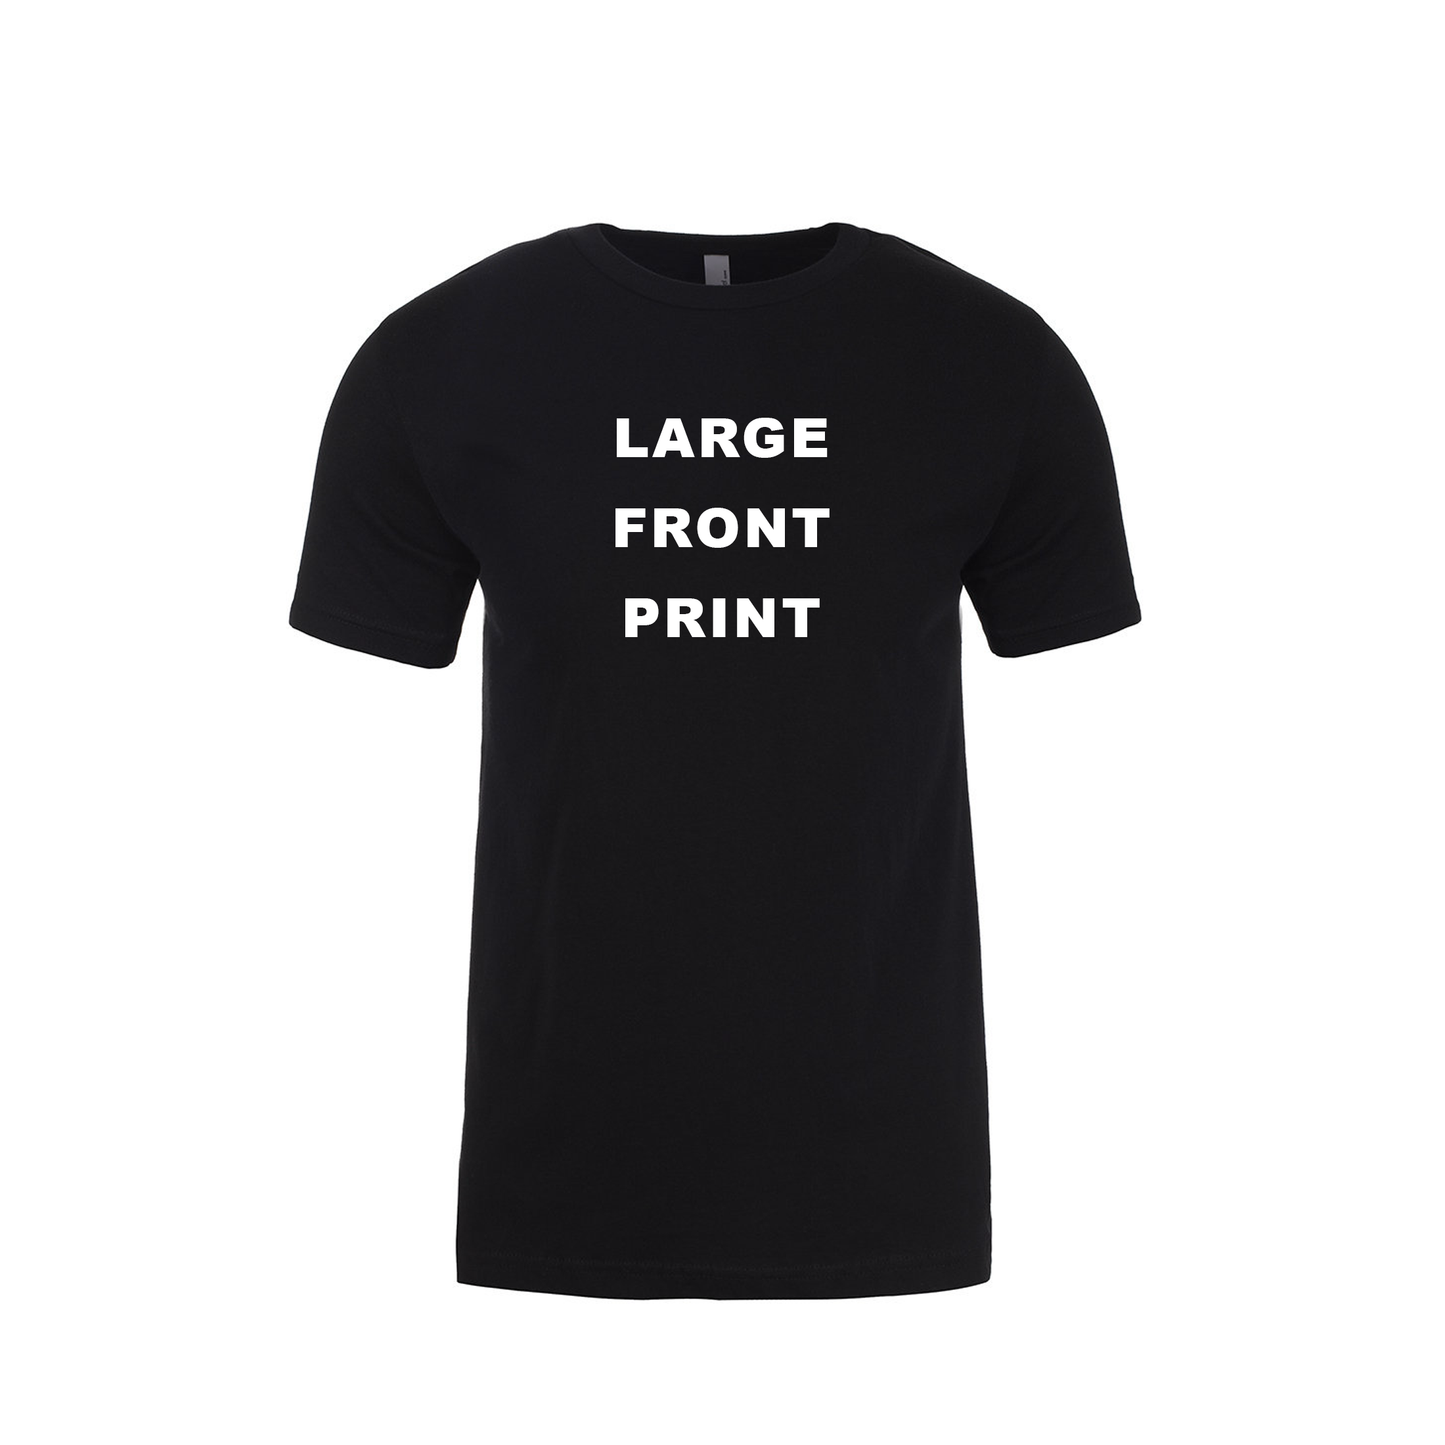 Printed TShirt: Next Level